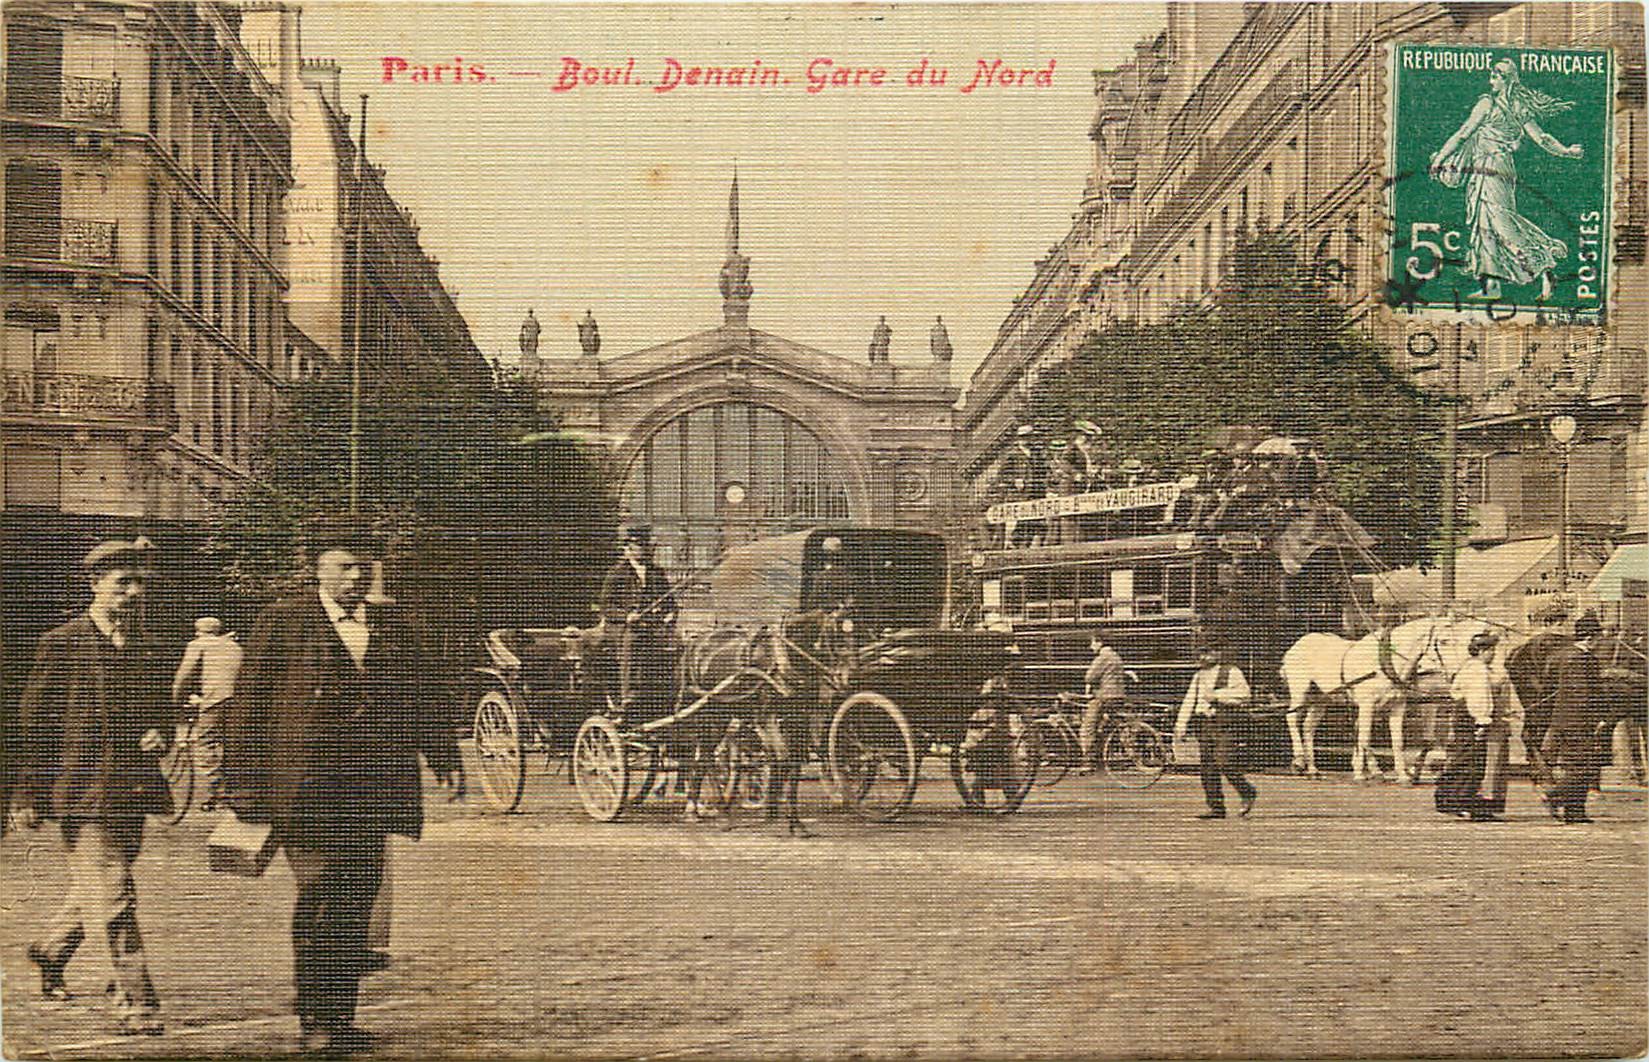 PARIS X. Hippomobile à impérial Boulevard Denain et Gare du Nord 1907